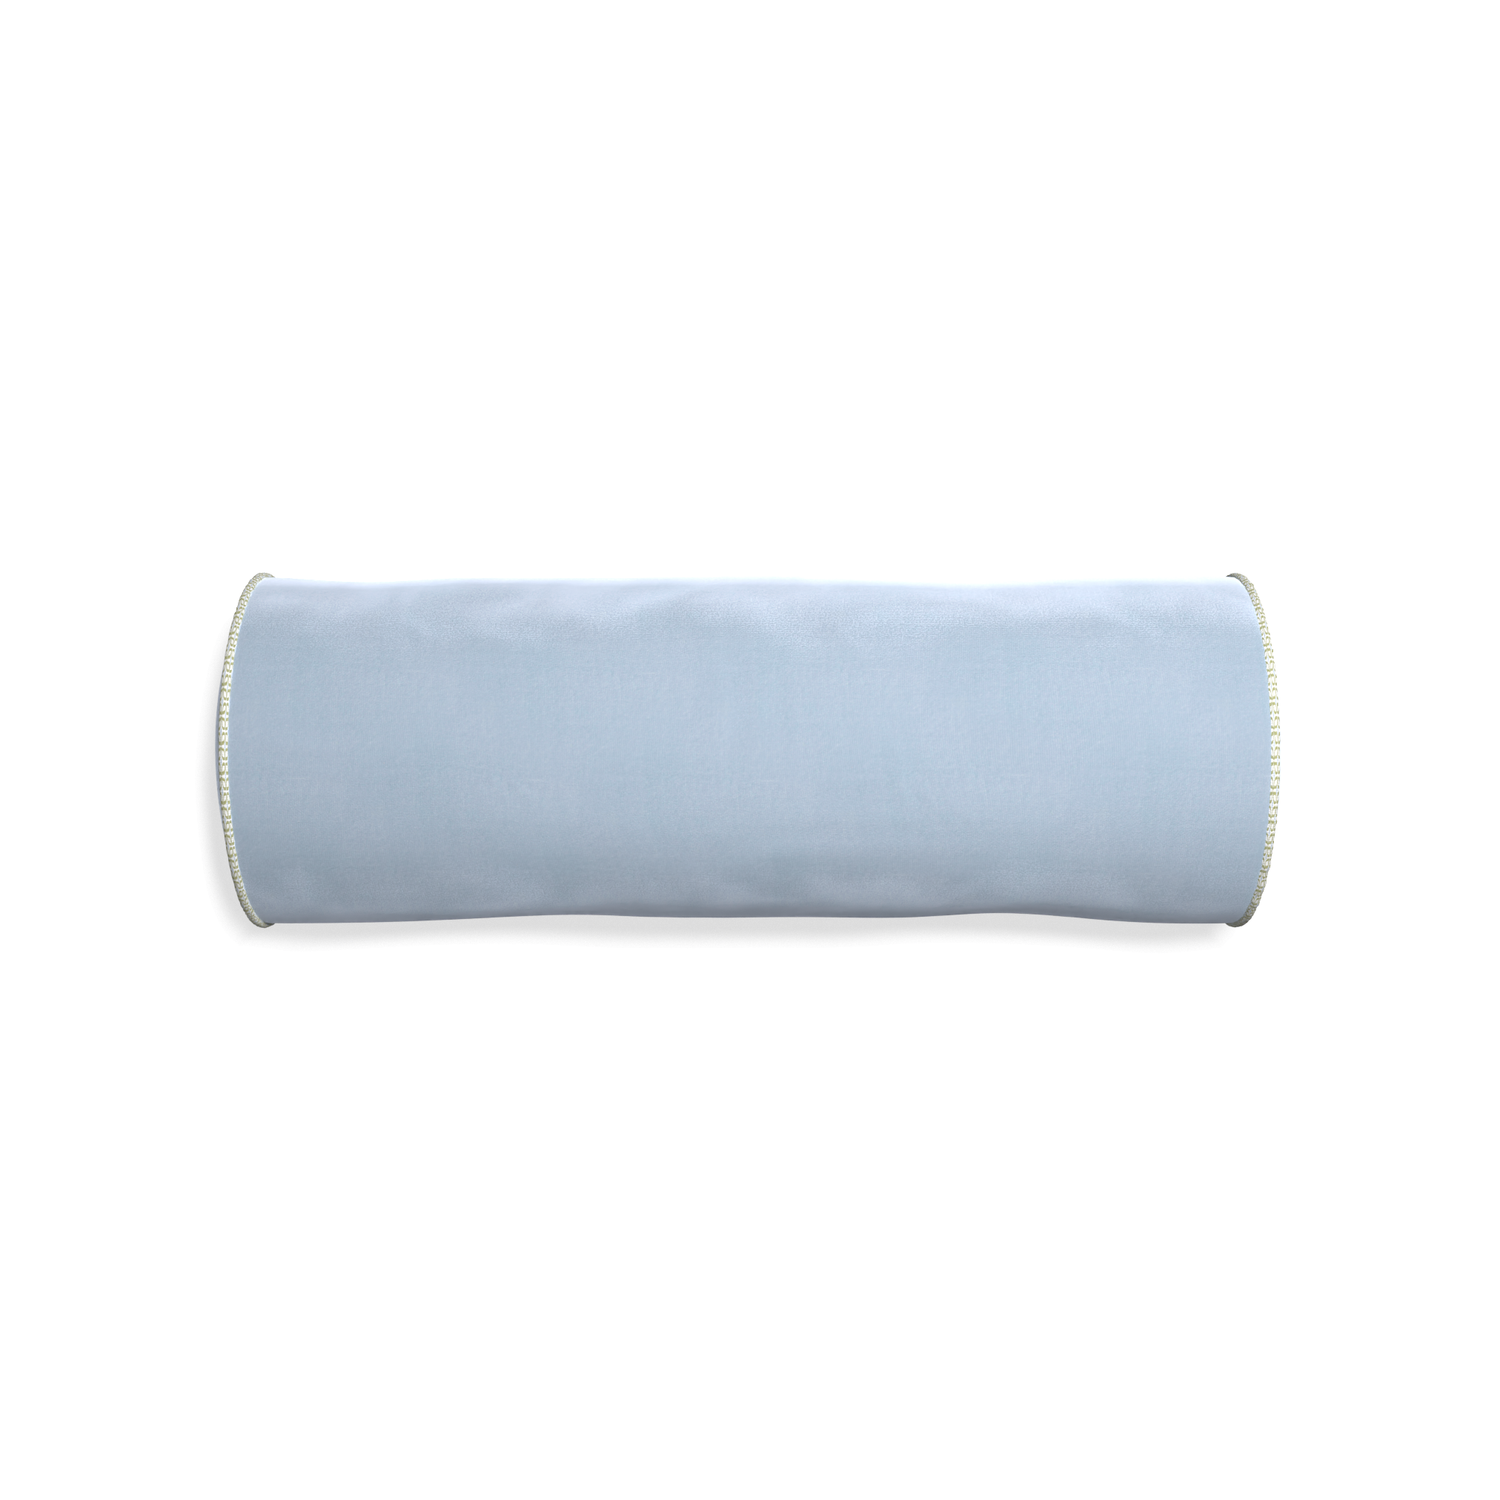 bolster light blue velvet pillow with moss green geometric piping